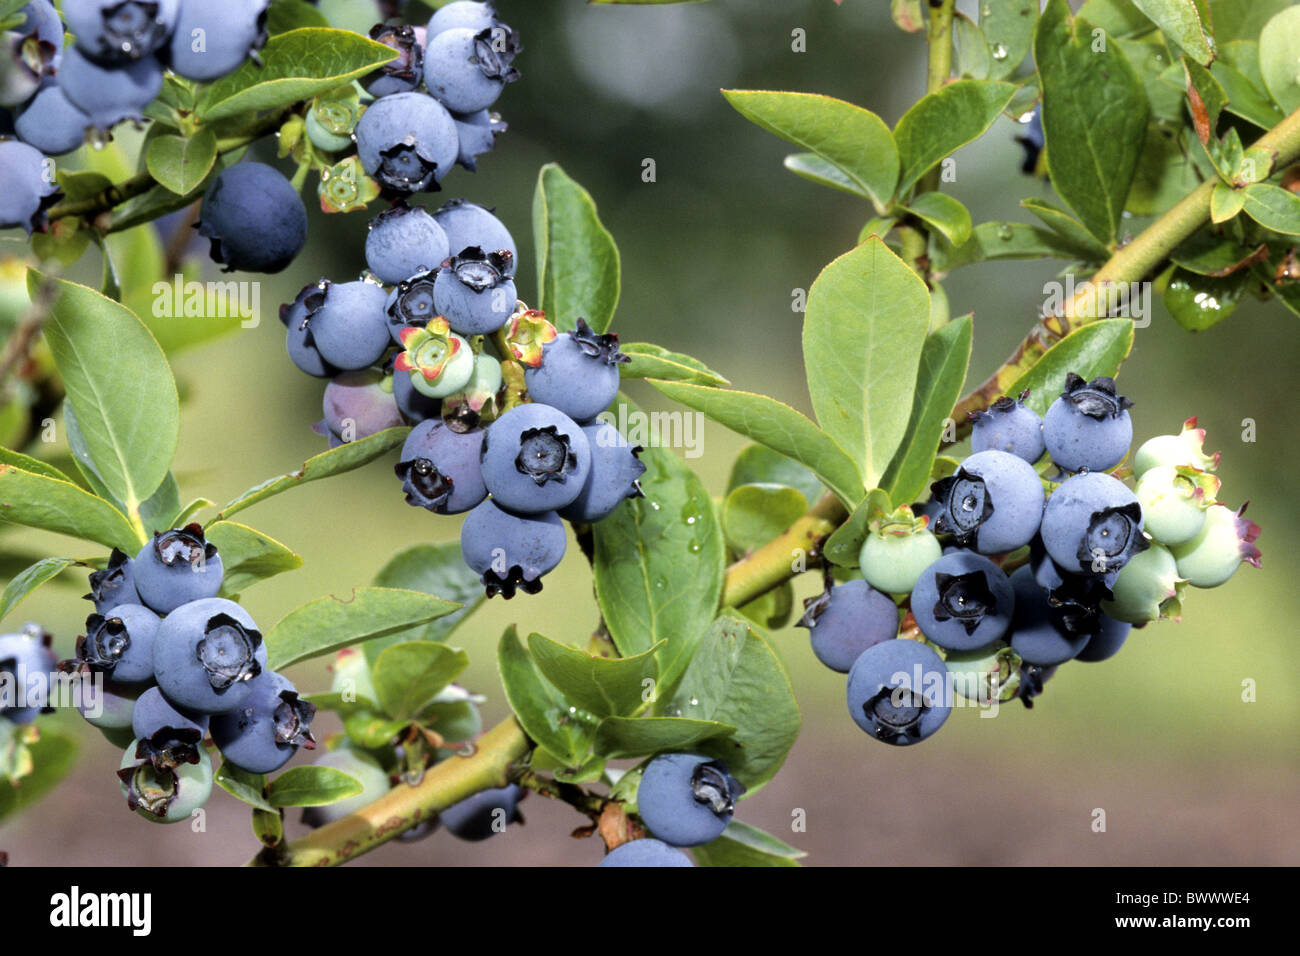 Le nord de l'airelle en corymbe (Vaccinium corymbosum), variété : Bluetta, mûr et petits fruits encore verts sur bush. Banque D'Images